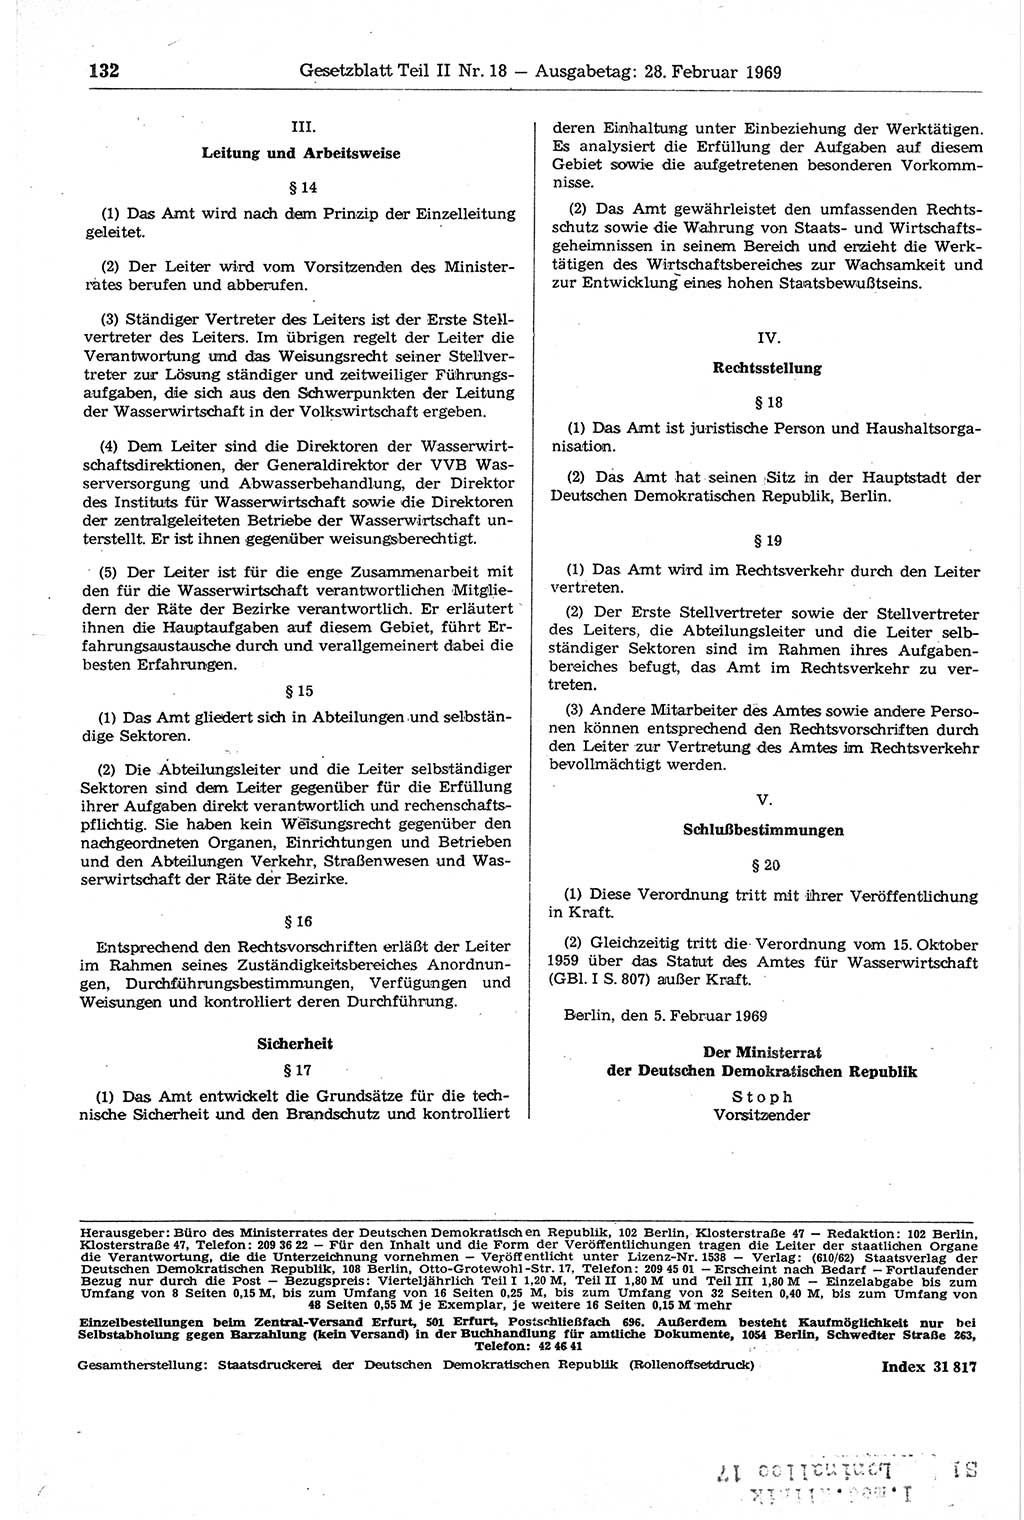 Gesetzblatt (GBl.) der Deutschen Demokratischen Republik (DDR) Teil ⅠⅠ 1969, Seite 132 (GBl. DDR ⅠⅠ 1969, S. 132)